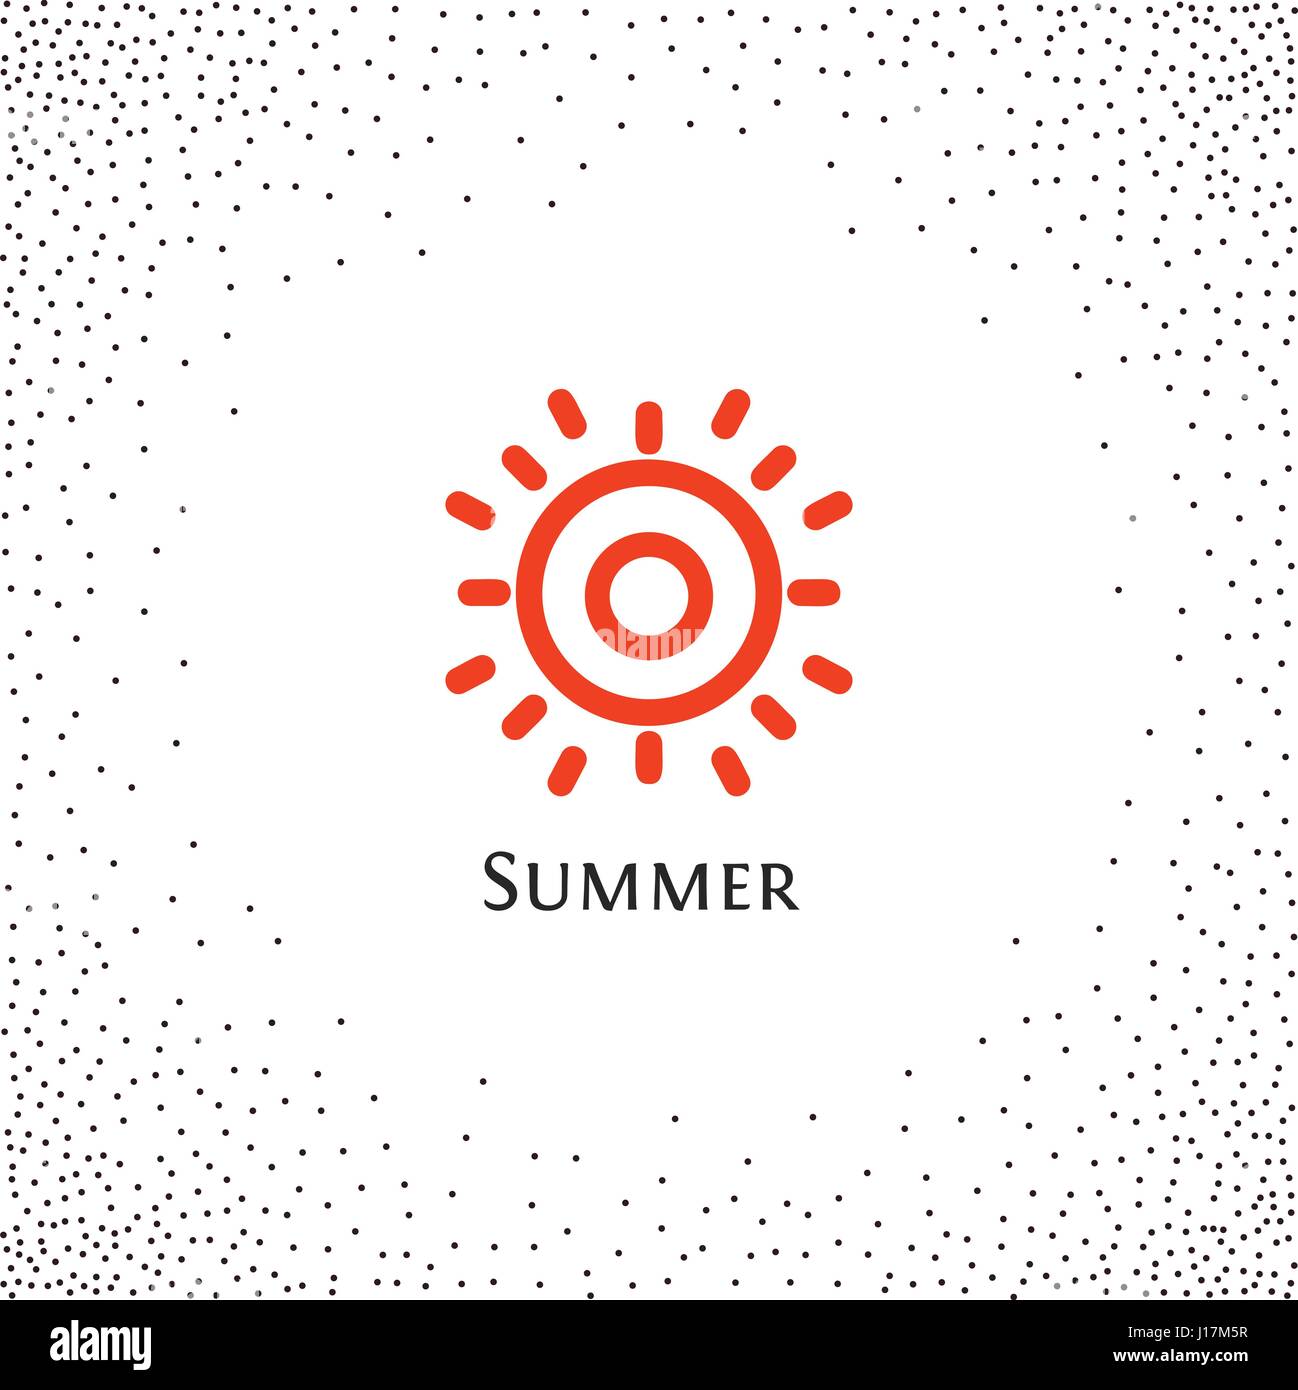 Isolierte abstrakt Runde Form Farbe orange Logo, Sonne Schriftzug Vektor-Illustration auf einem Hintergrund von Punkten. Stock Vektor